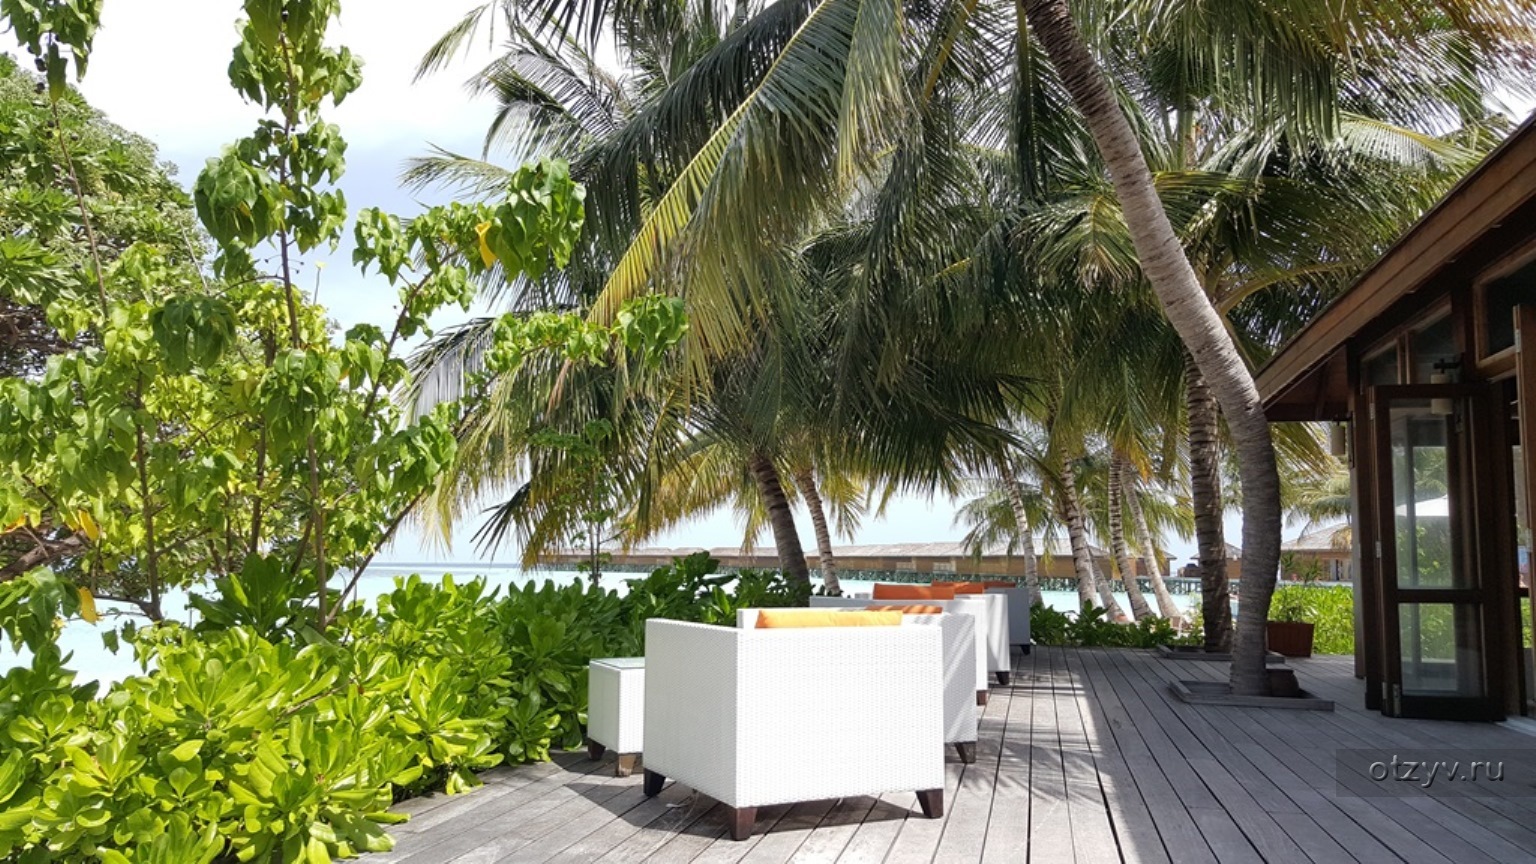 Vilamendhoo island resort. Vilamendhoo Island Resort & Spa. Vilamendhoo Island Maldives. Vilamendhoo Island Resort & Spa вид сверху. Vilamendhoo Island Resort 4.